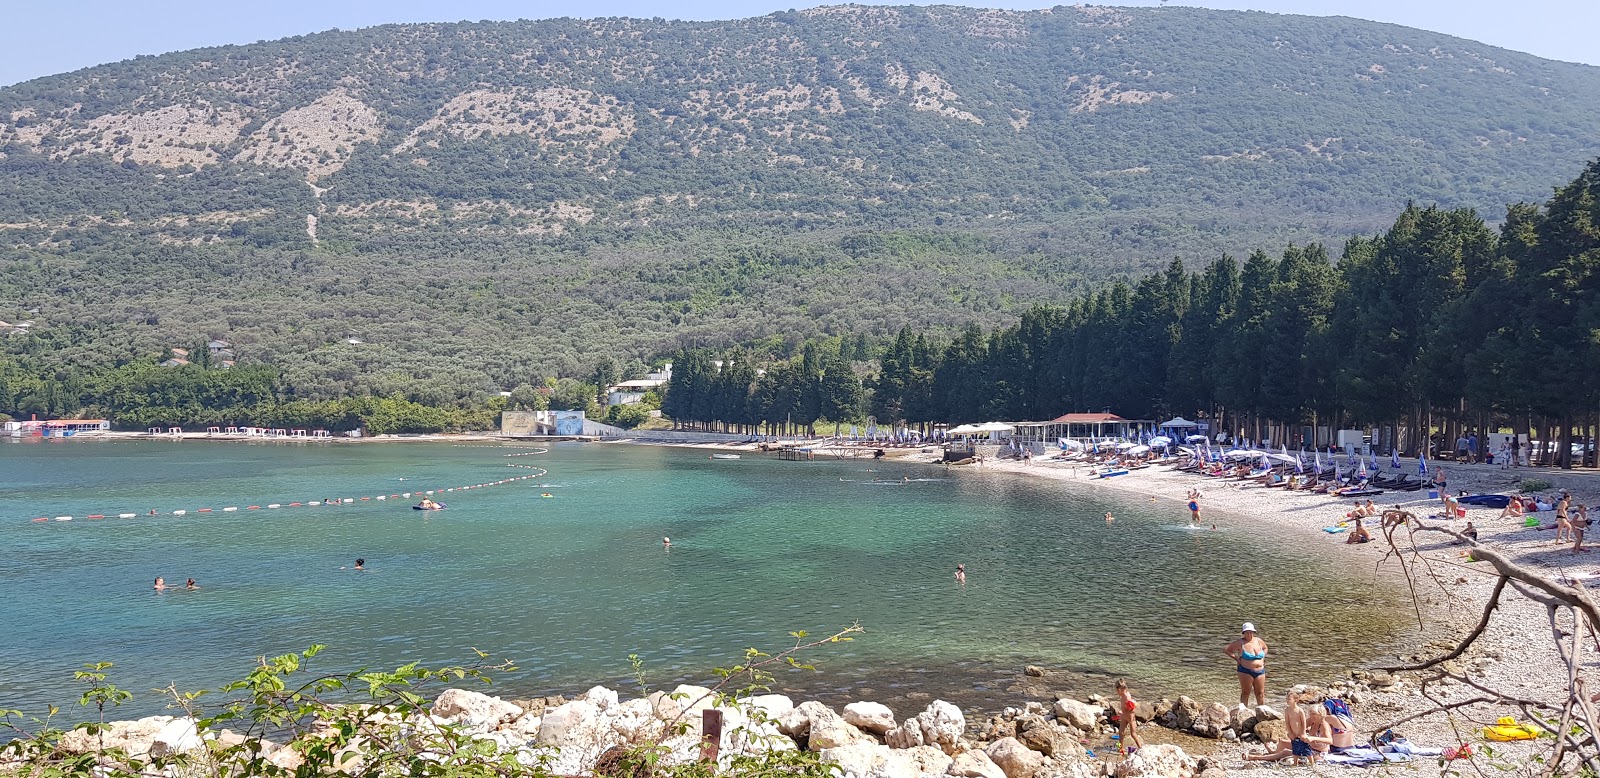 Valdanos beach'in fotoğrafı hafif çakıl yüzey ile